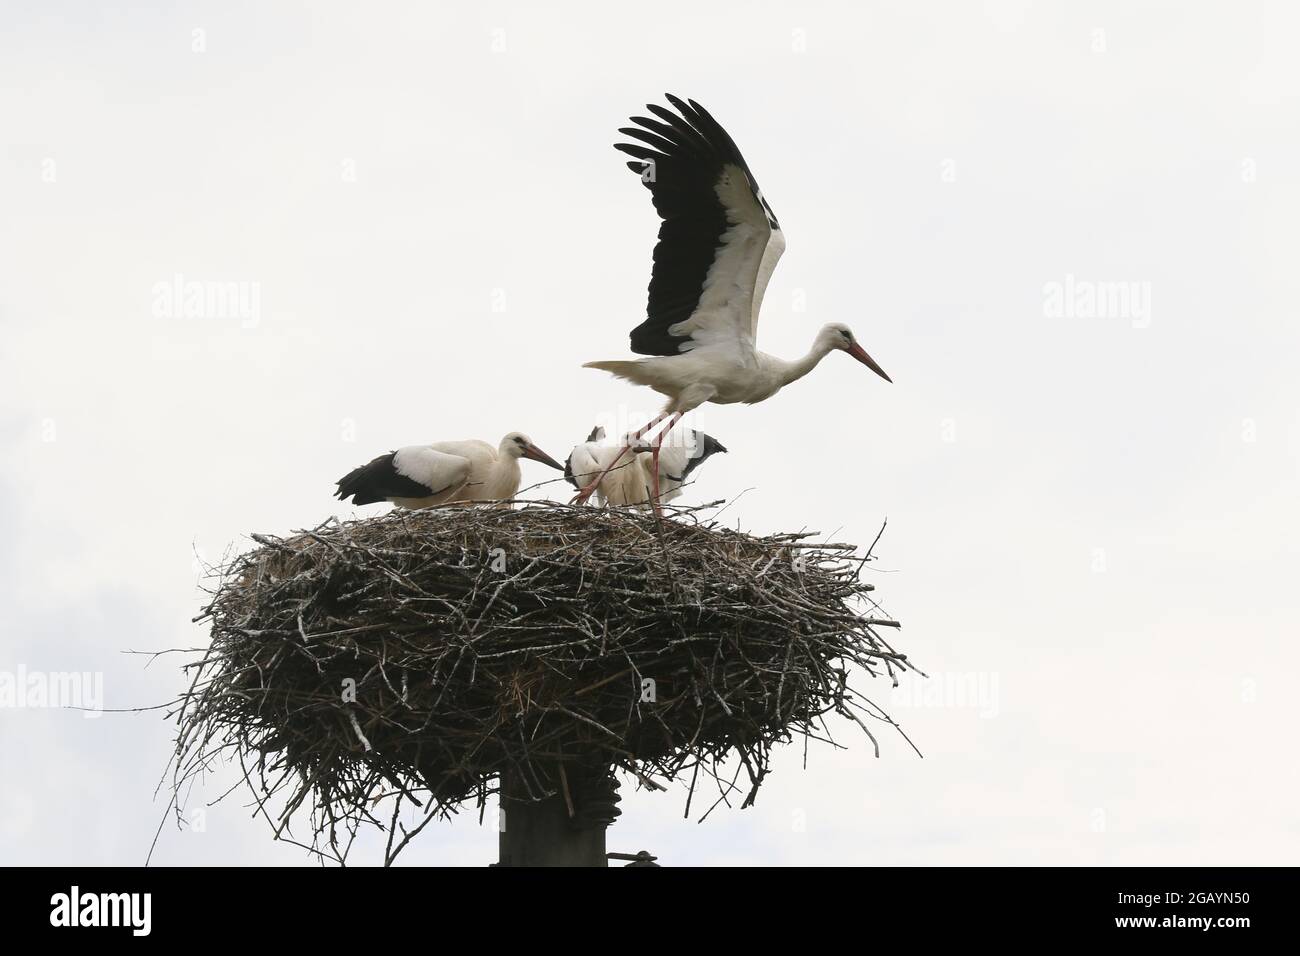 08/01/2021, Germany, Brandenburg, Ihlow ( Oberbarnim). Young storks feeding in stork nest. Stock Photo